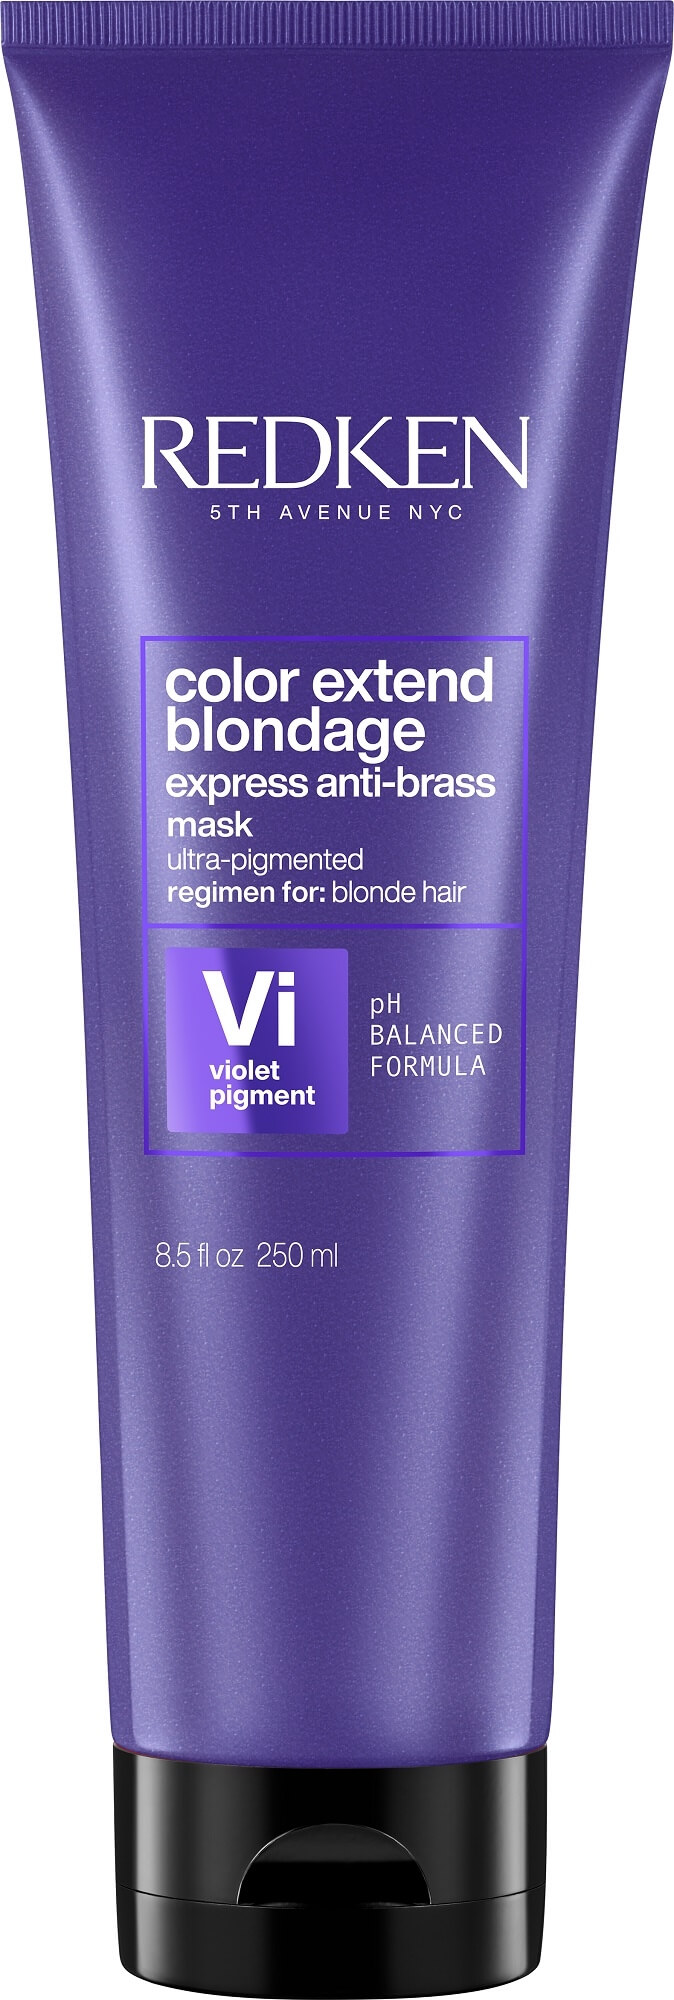 Levně Redken Maska neutralizující žluté tóny vlasů Color Extend Blondage (Express Anti-brass Purple Mask) 250 ml